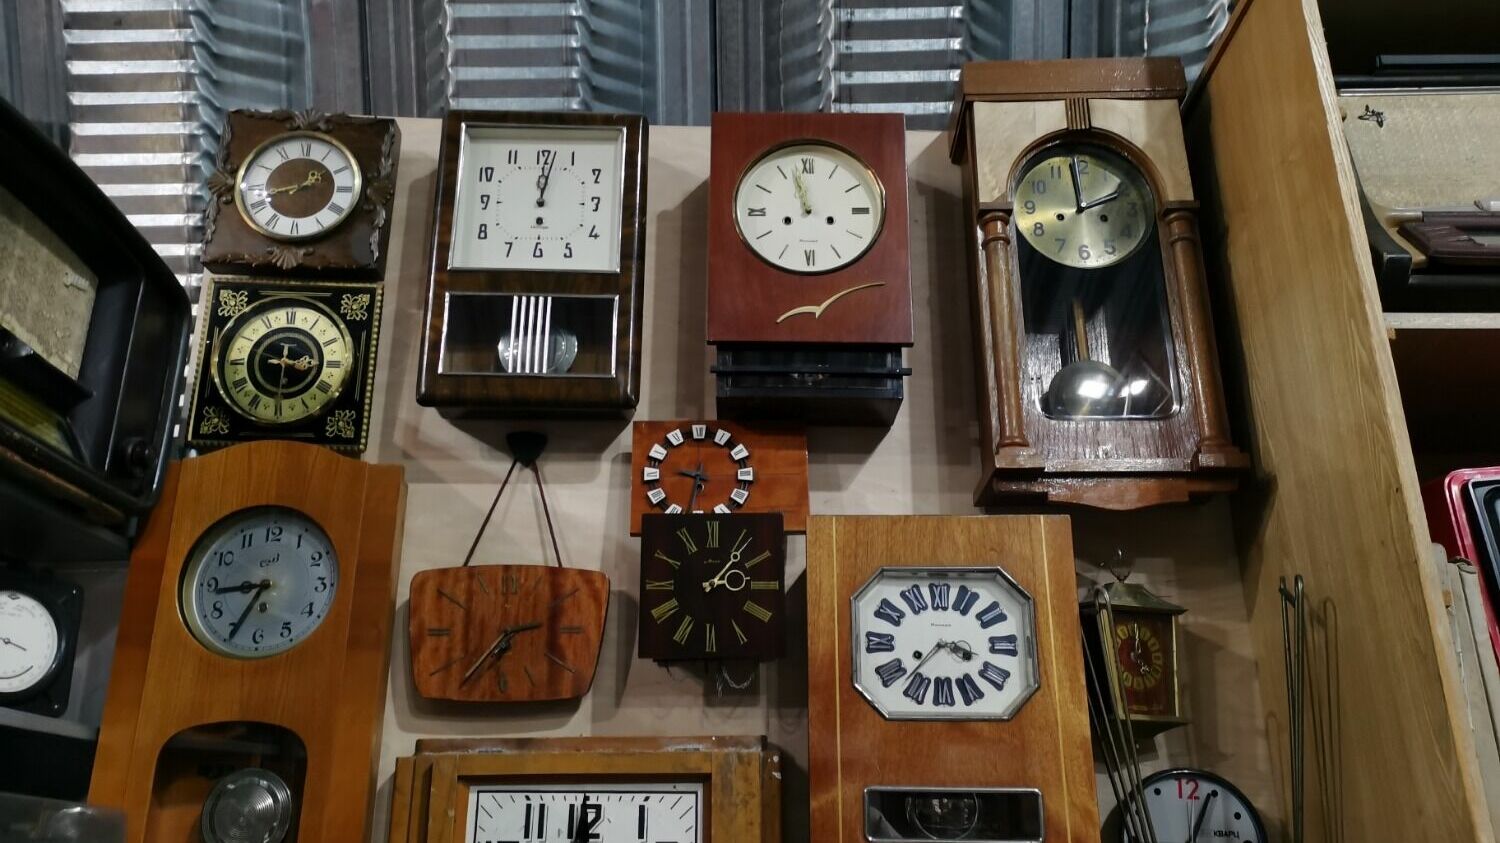 «Были часы точно такие же слева коричневые, в 1978 году я пошла в уцененный магазин и купила эти часы без стекла, стоили дешево, но работали долго, а потом они сломались, причём произошло это где-то в 2015 году»